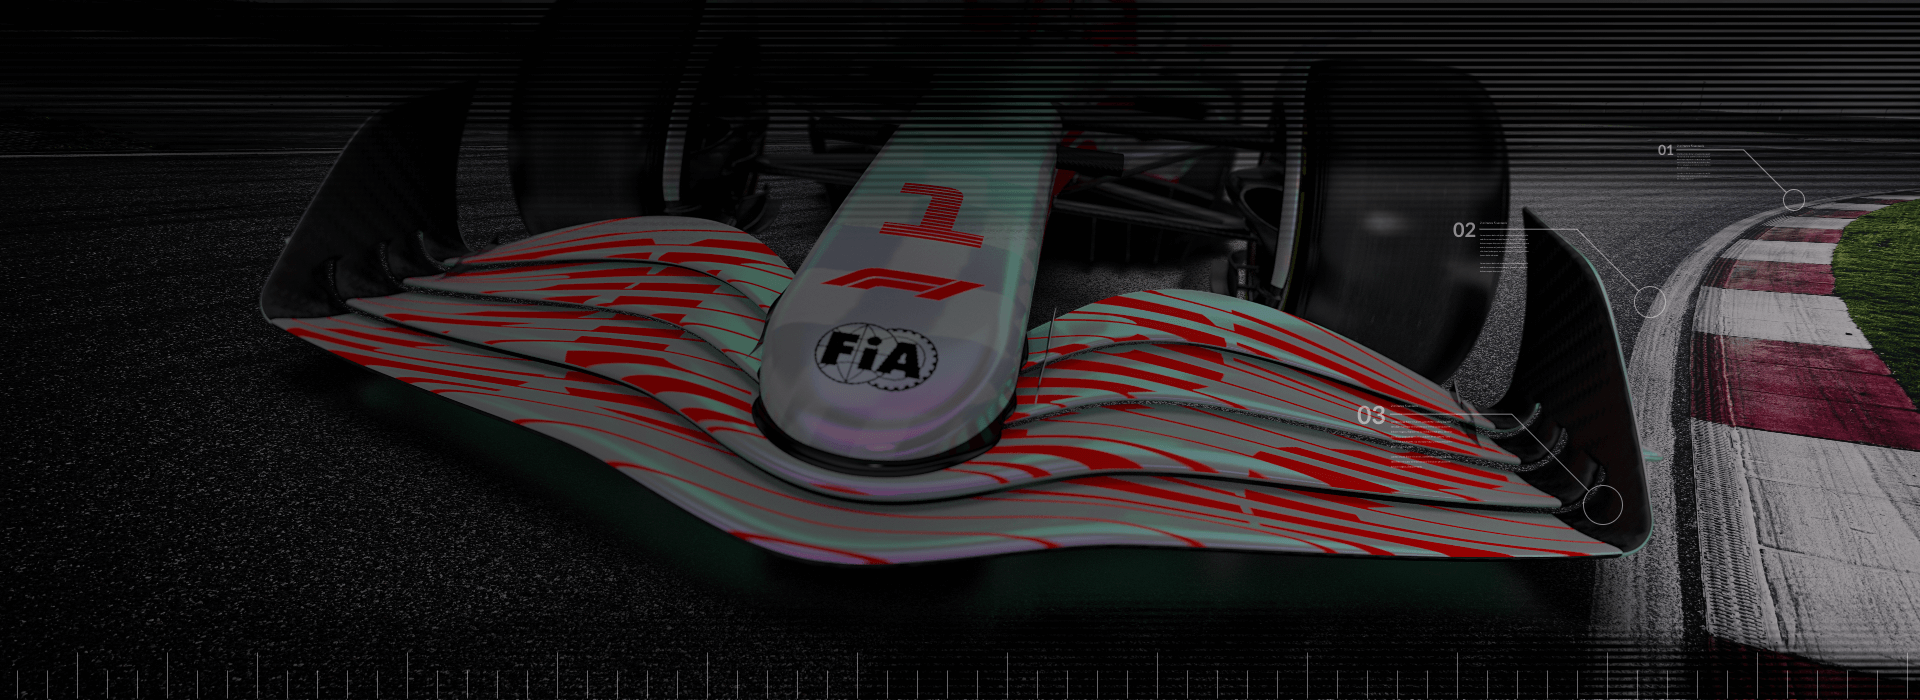 Автомобиль Формулы 1, преодолевающий вираж гоночной трассы, крупным планом.